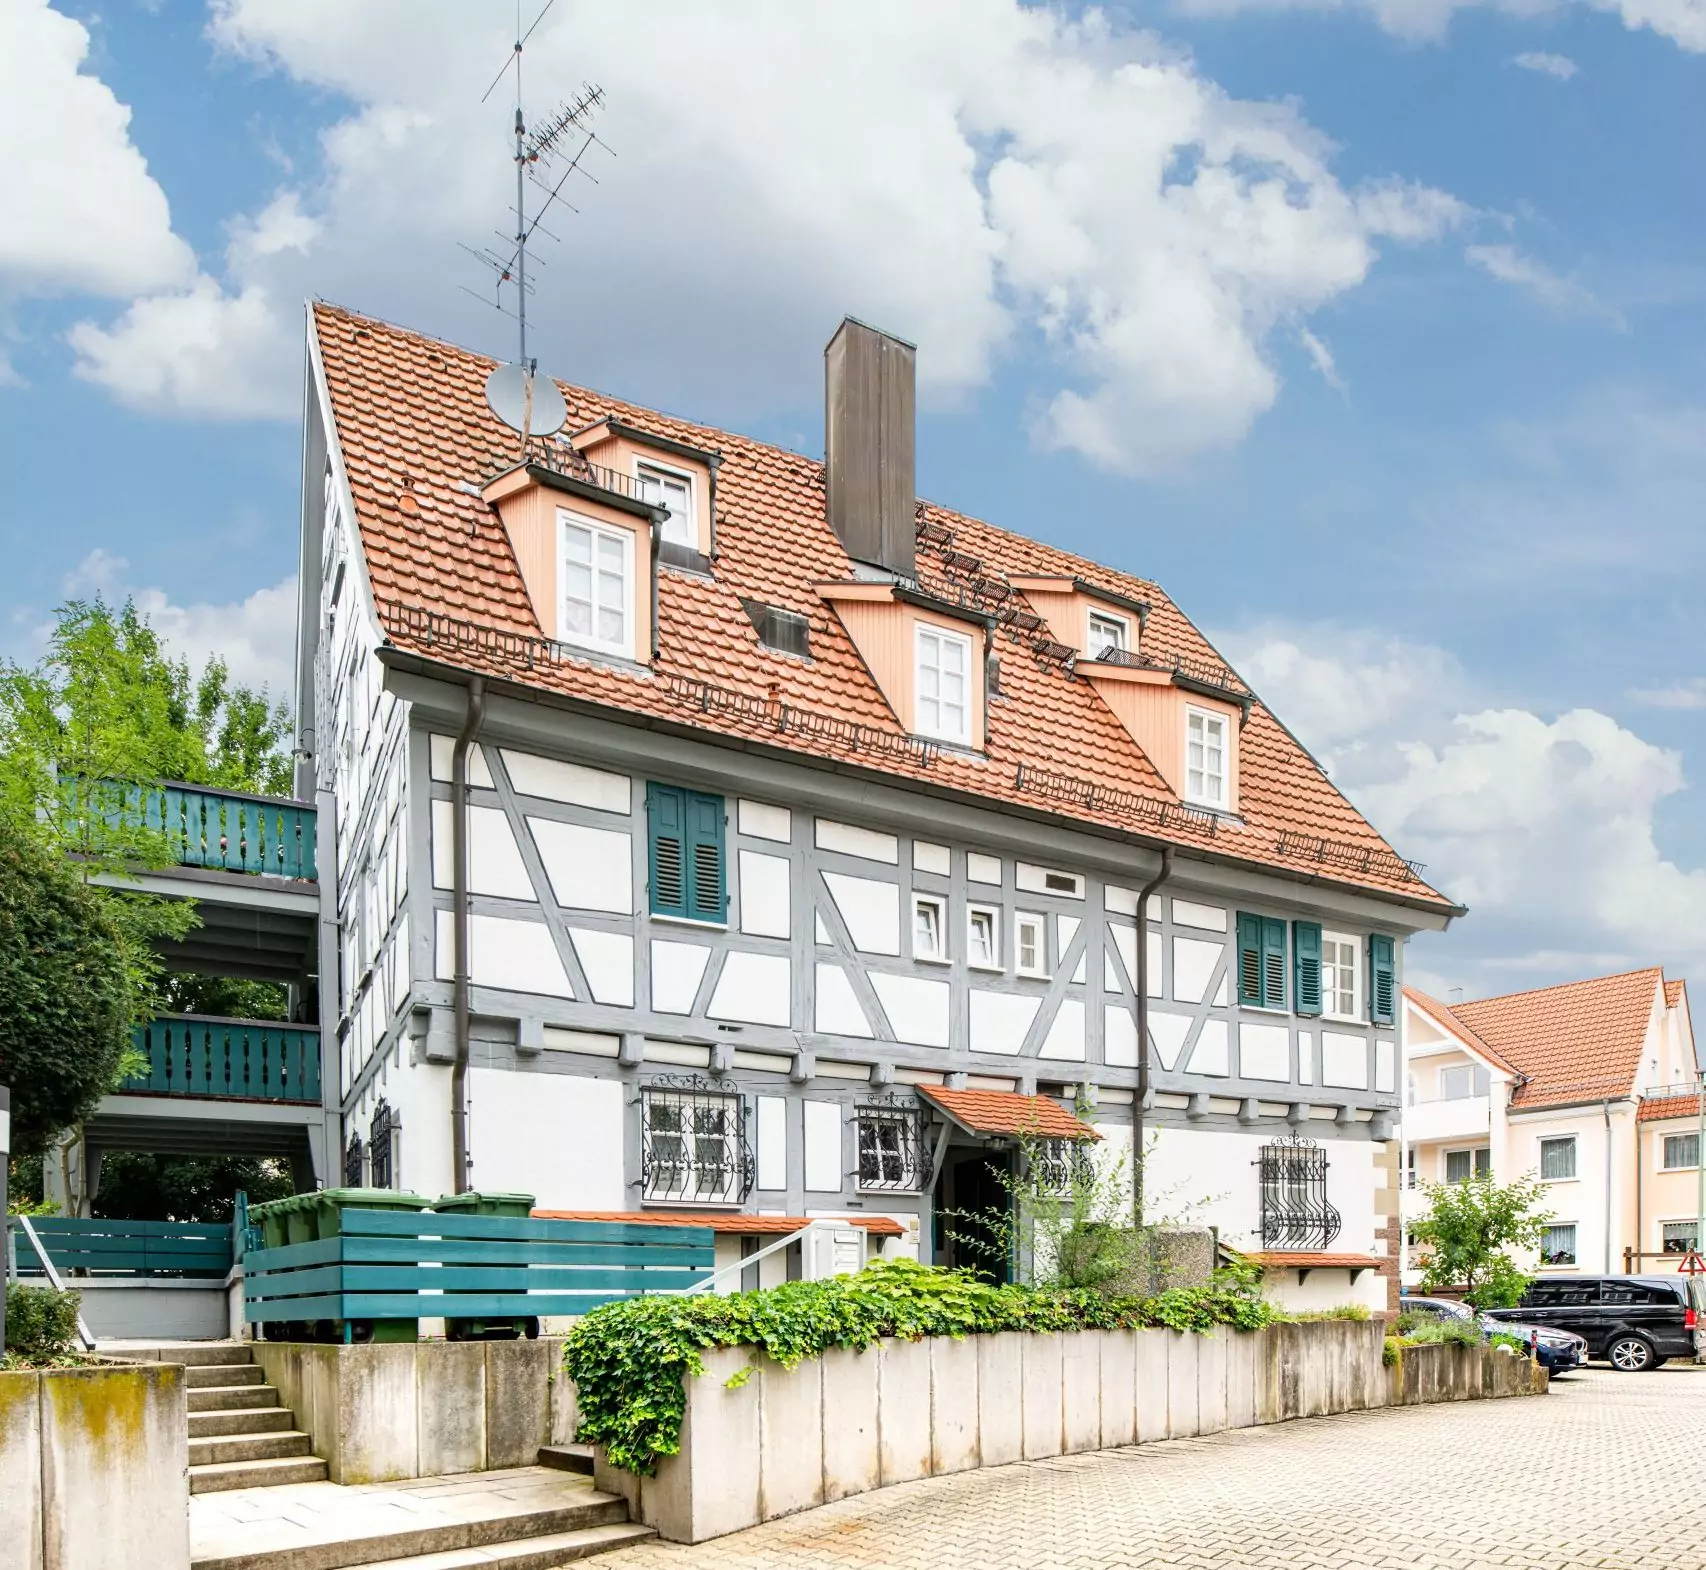 Aussenansicht des Standortes Ditzingen vom Bestattungshaus Anita Märtin. Es ist ein restauriertes Fachwerk Haus mit weisser Front und grauen Holzbalken.